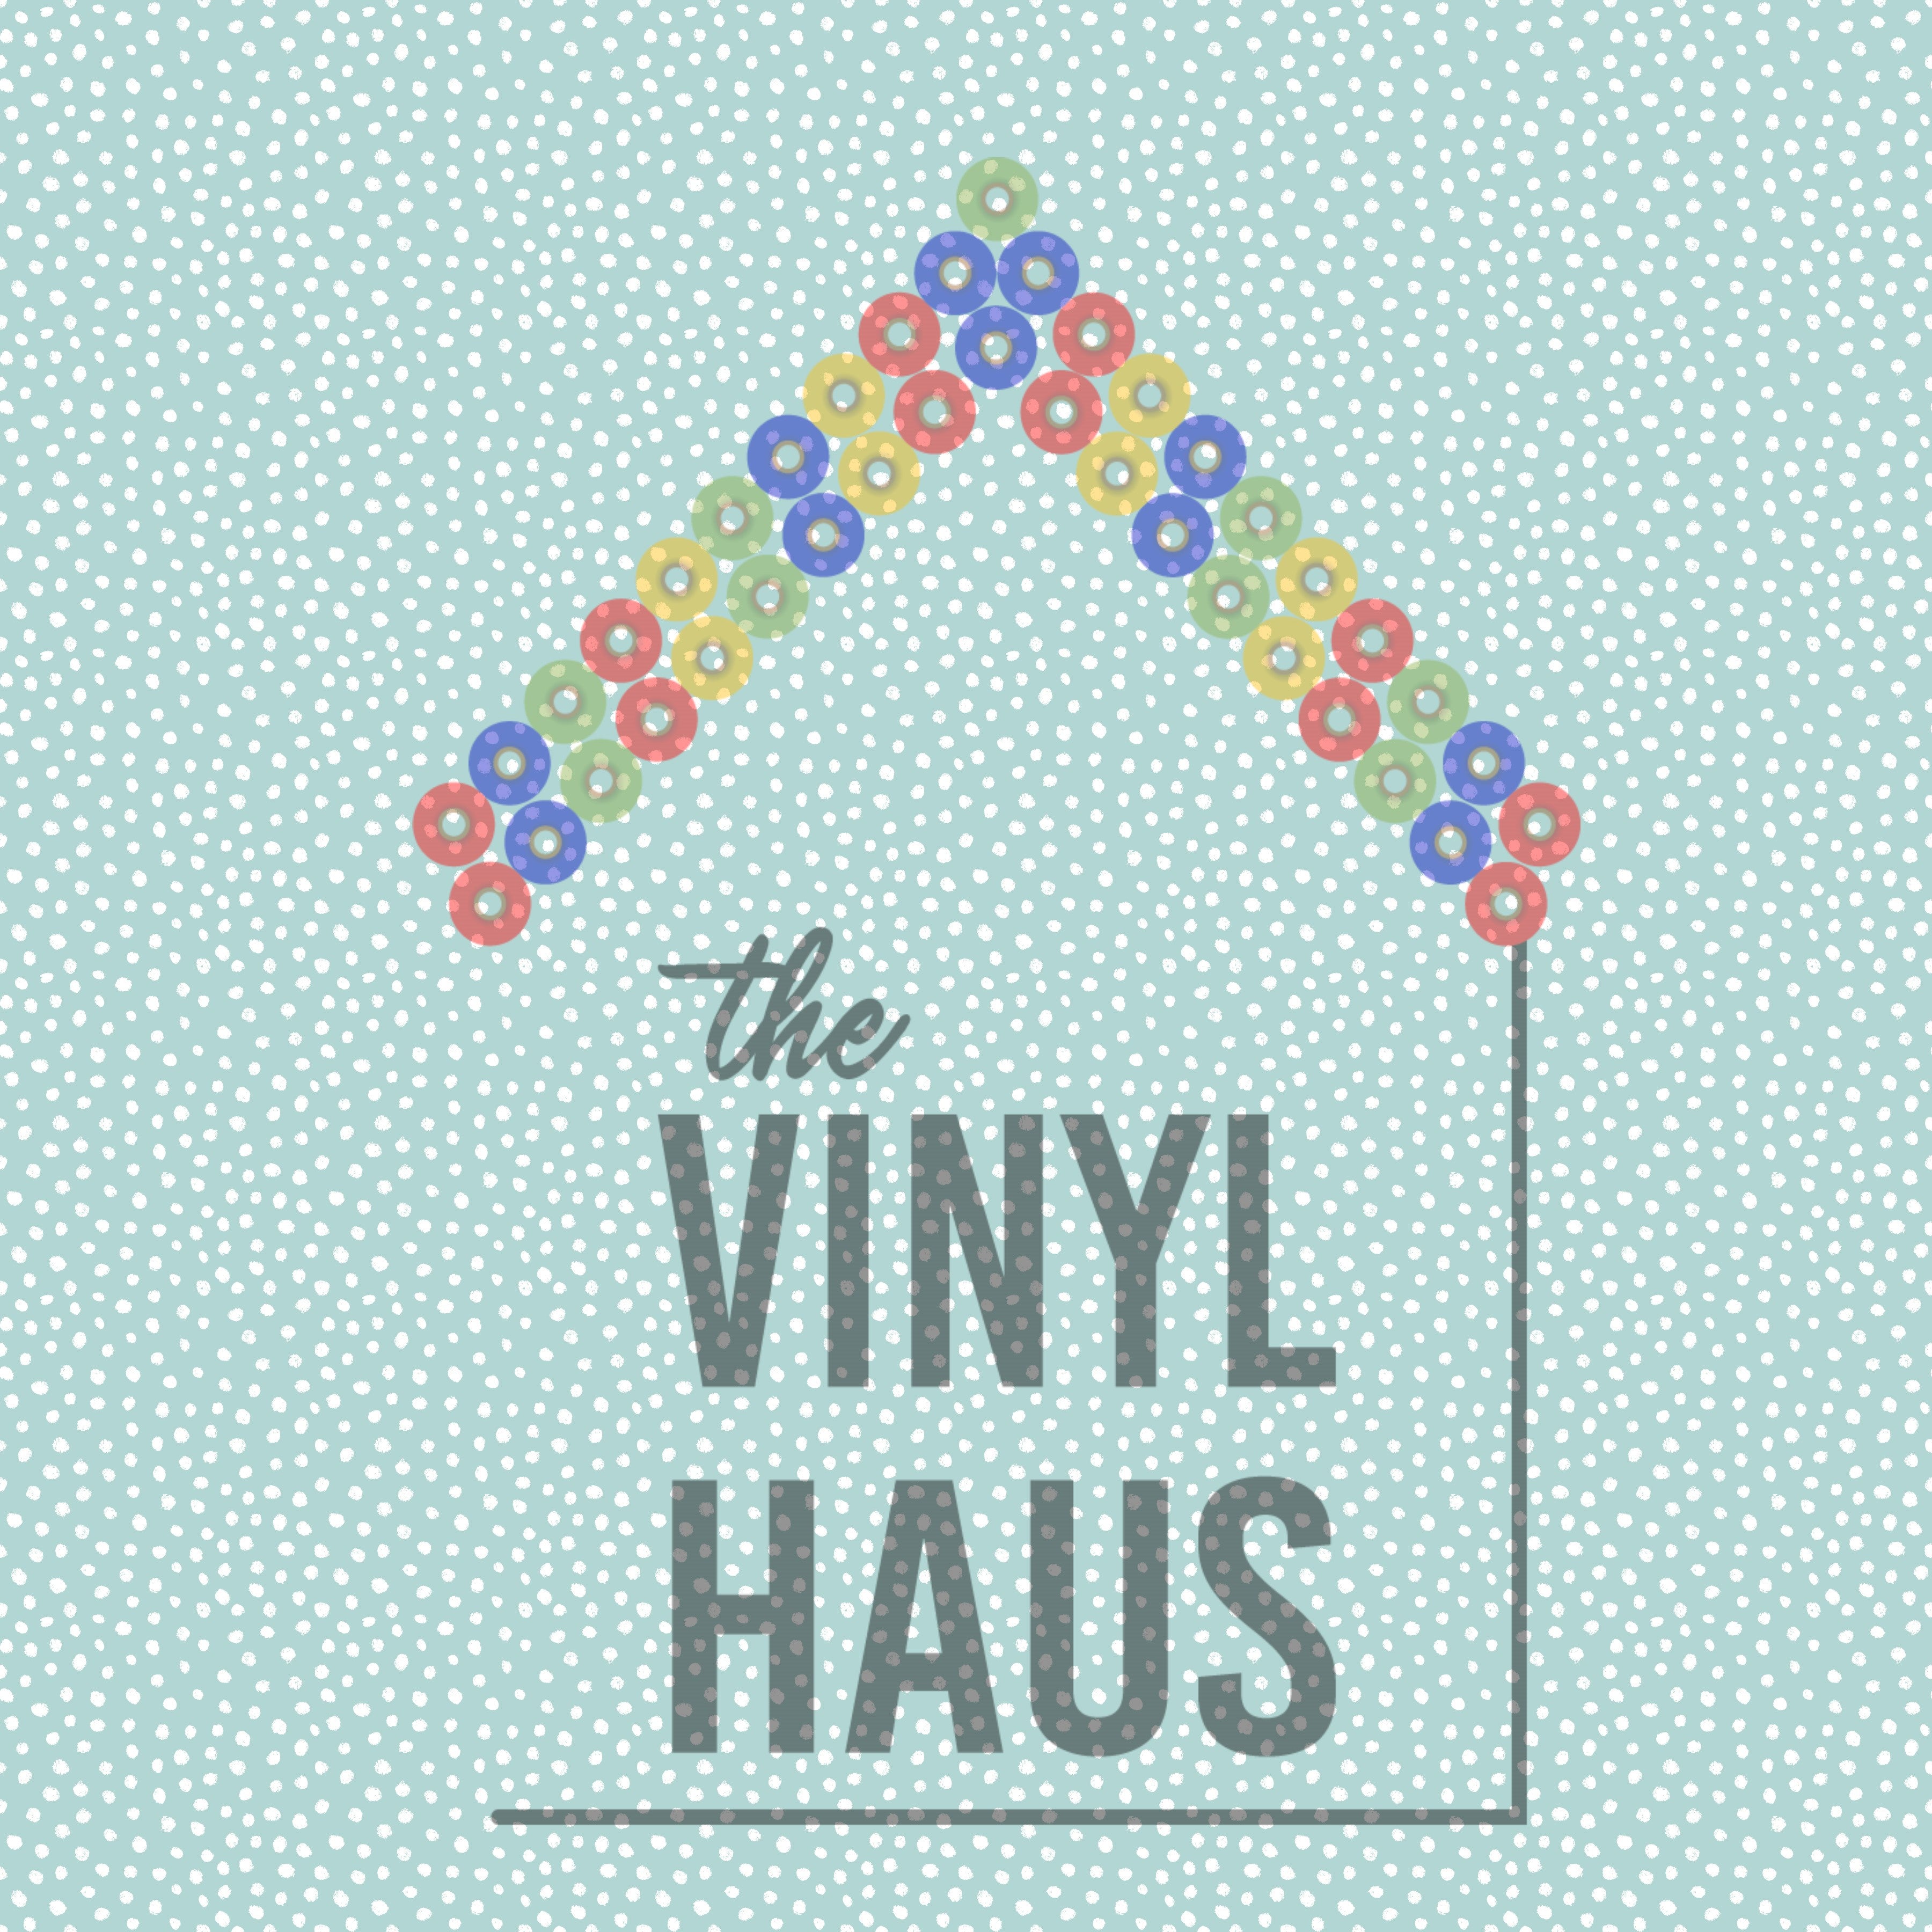 Light Blue and White Polka Dot Pattern Vinyl 12" x 12" - The Vinyl Haus